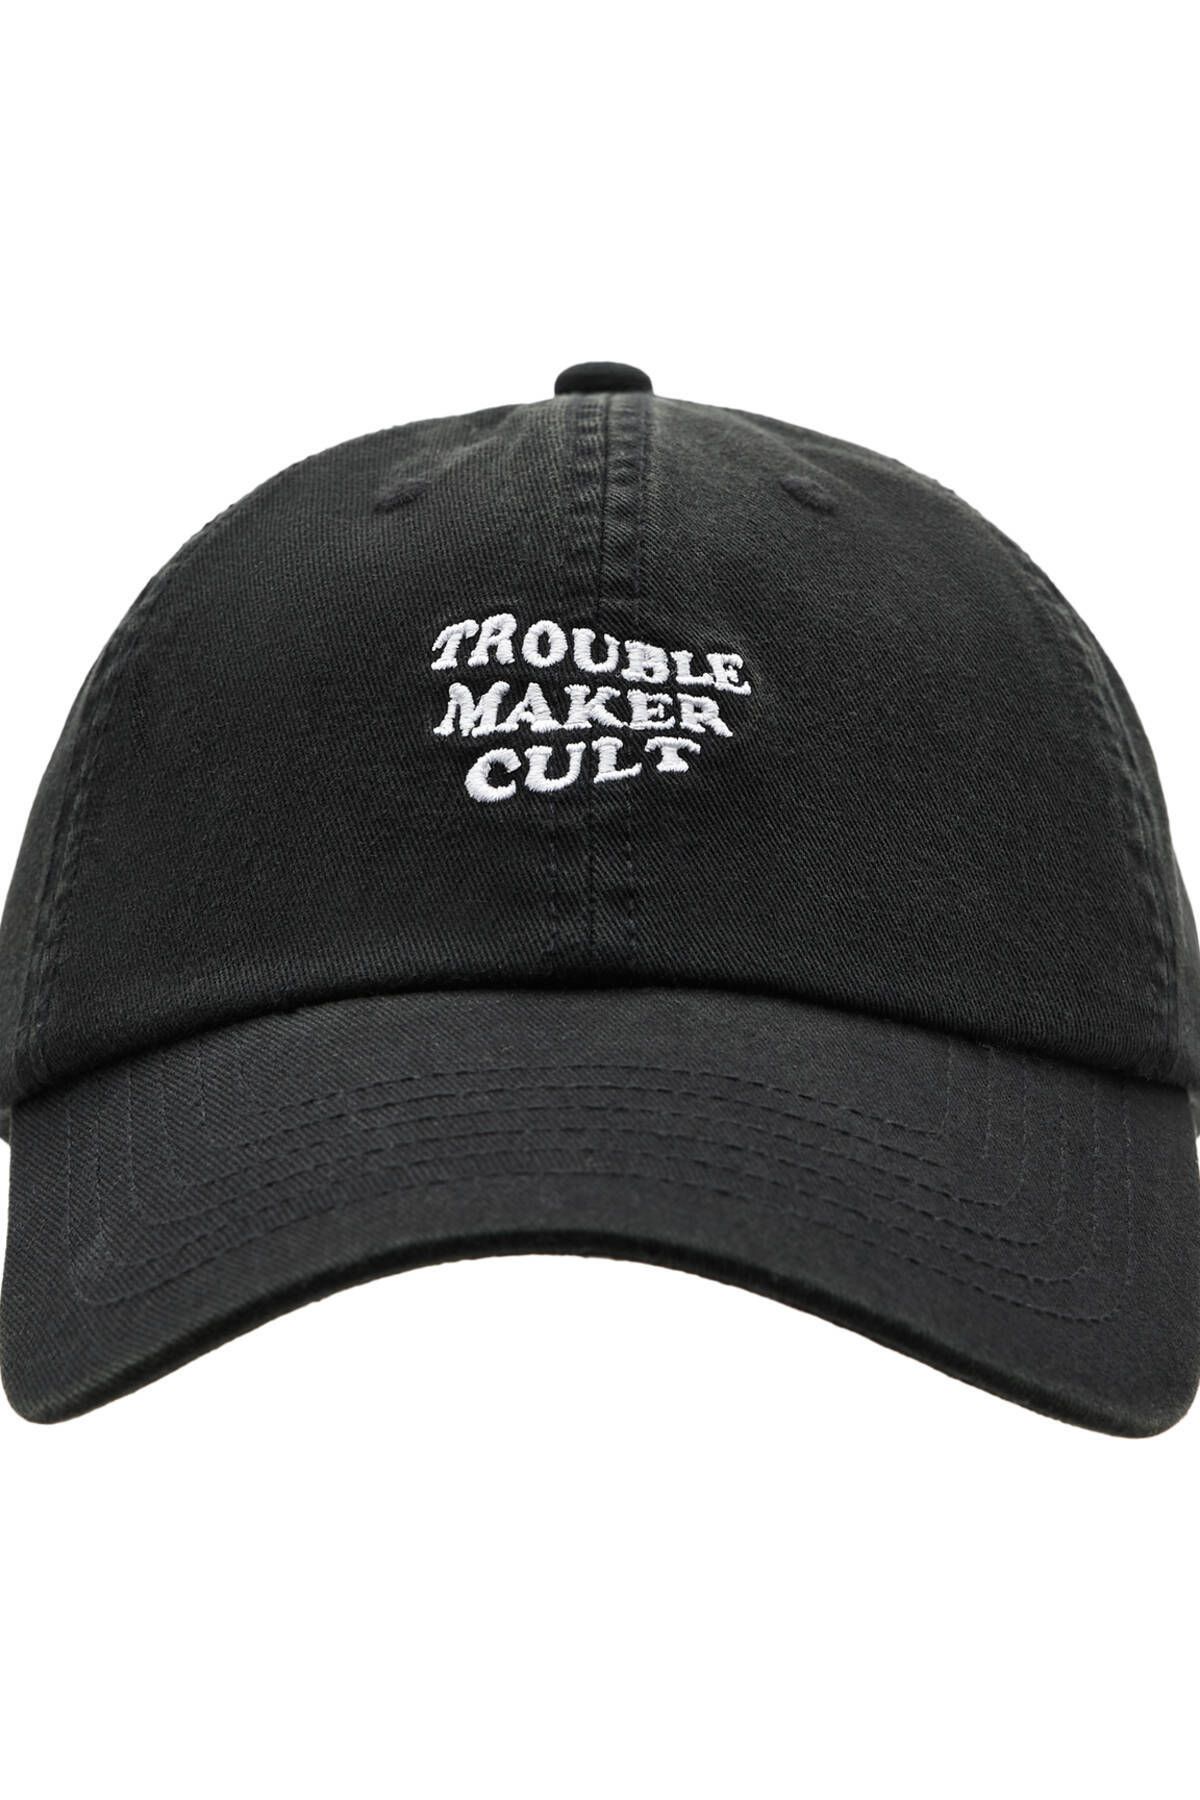 Pull & Bear Soluk efektli siyah şapka